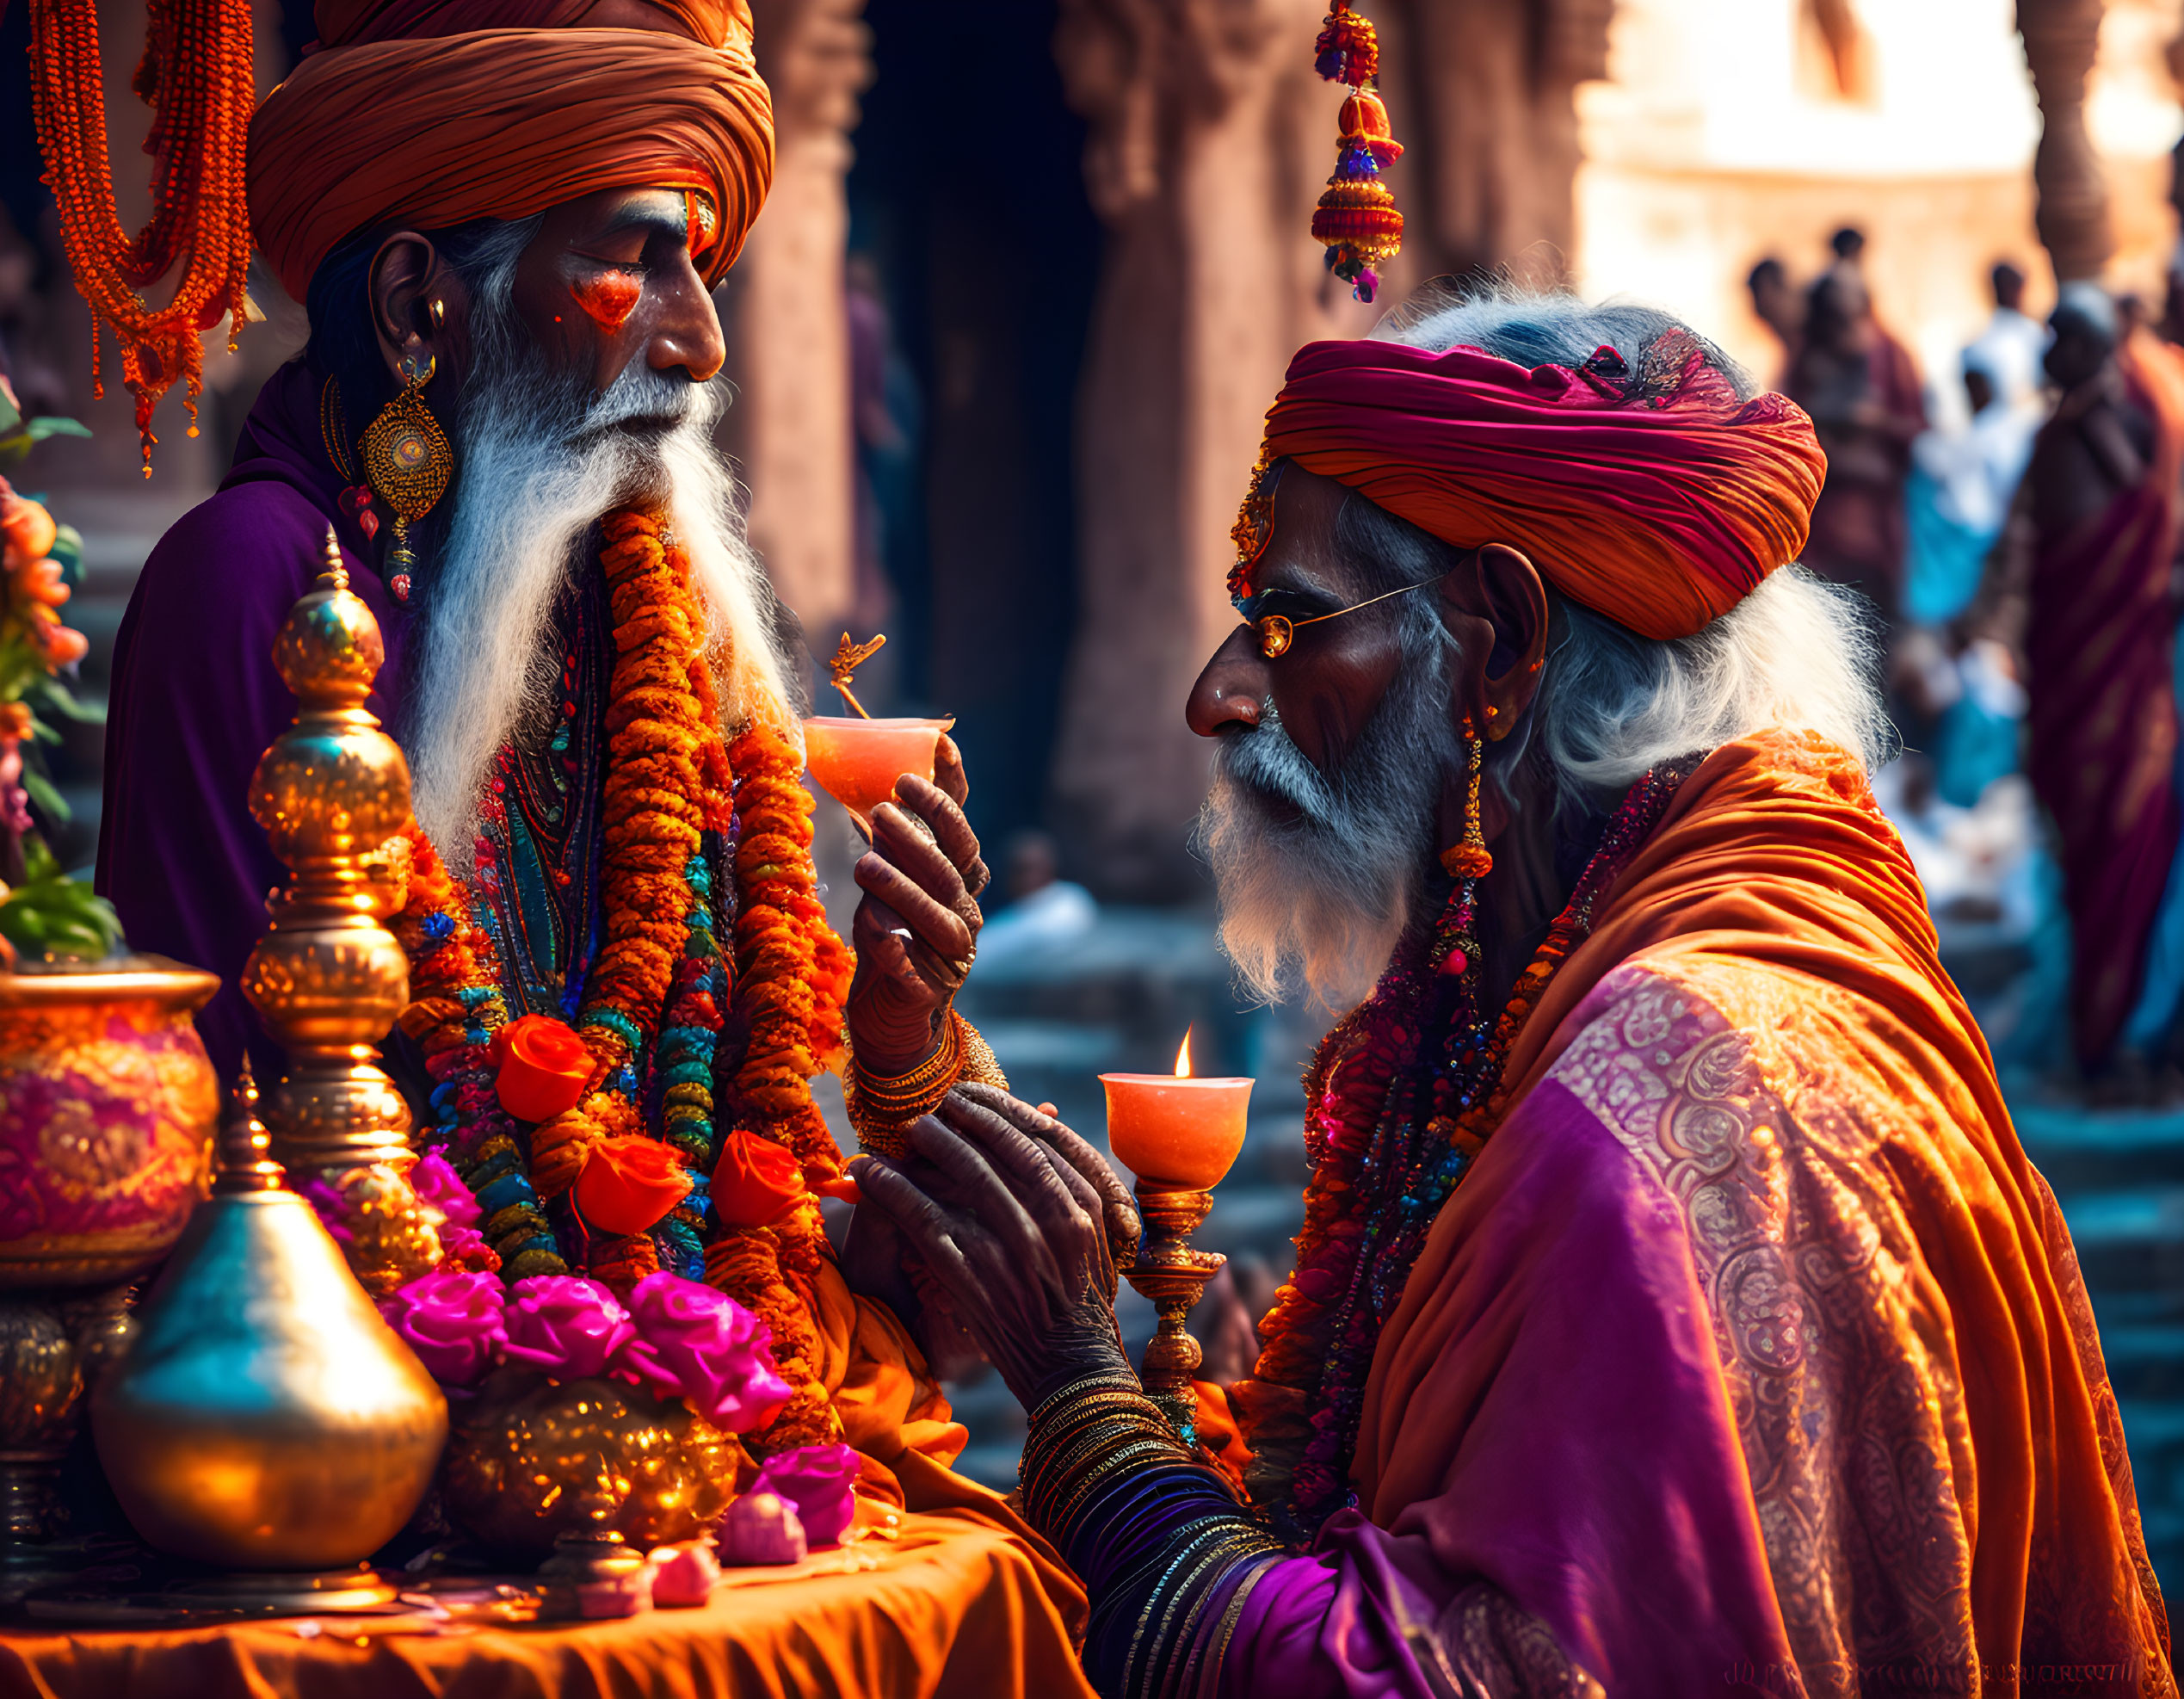 Puja by a sadhu in Varanasi India 